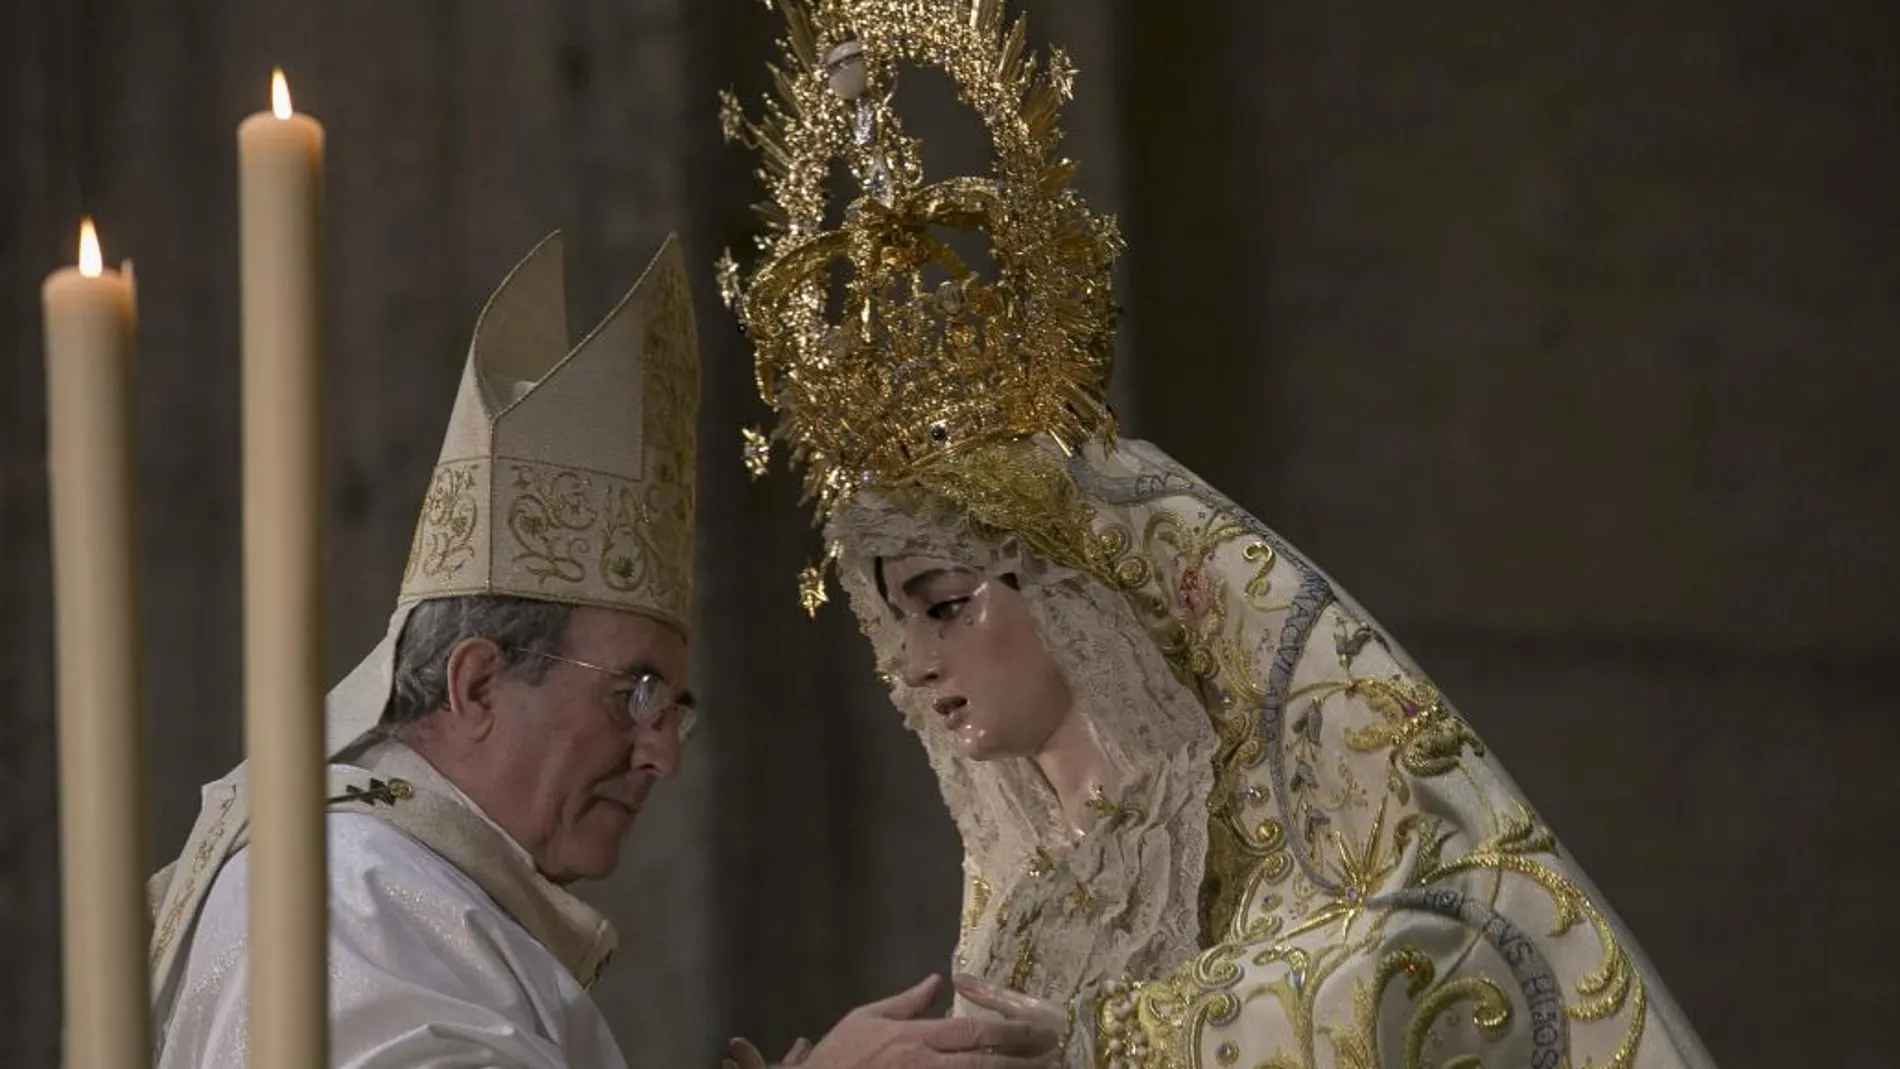 El arzobispo de Sevilla, Juan José Asenjo, rezó unos instantes ante la imagen tras colocarle la corona, obra de Fernando Marmolejo Carmargo